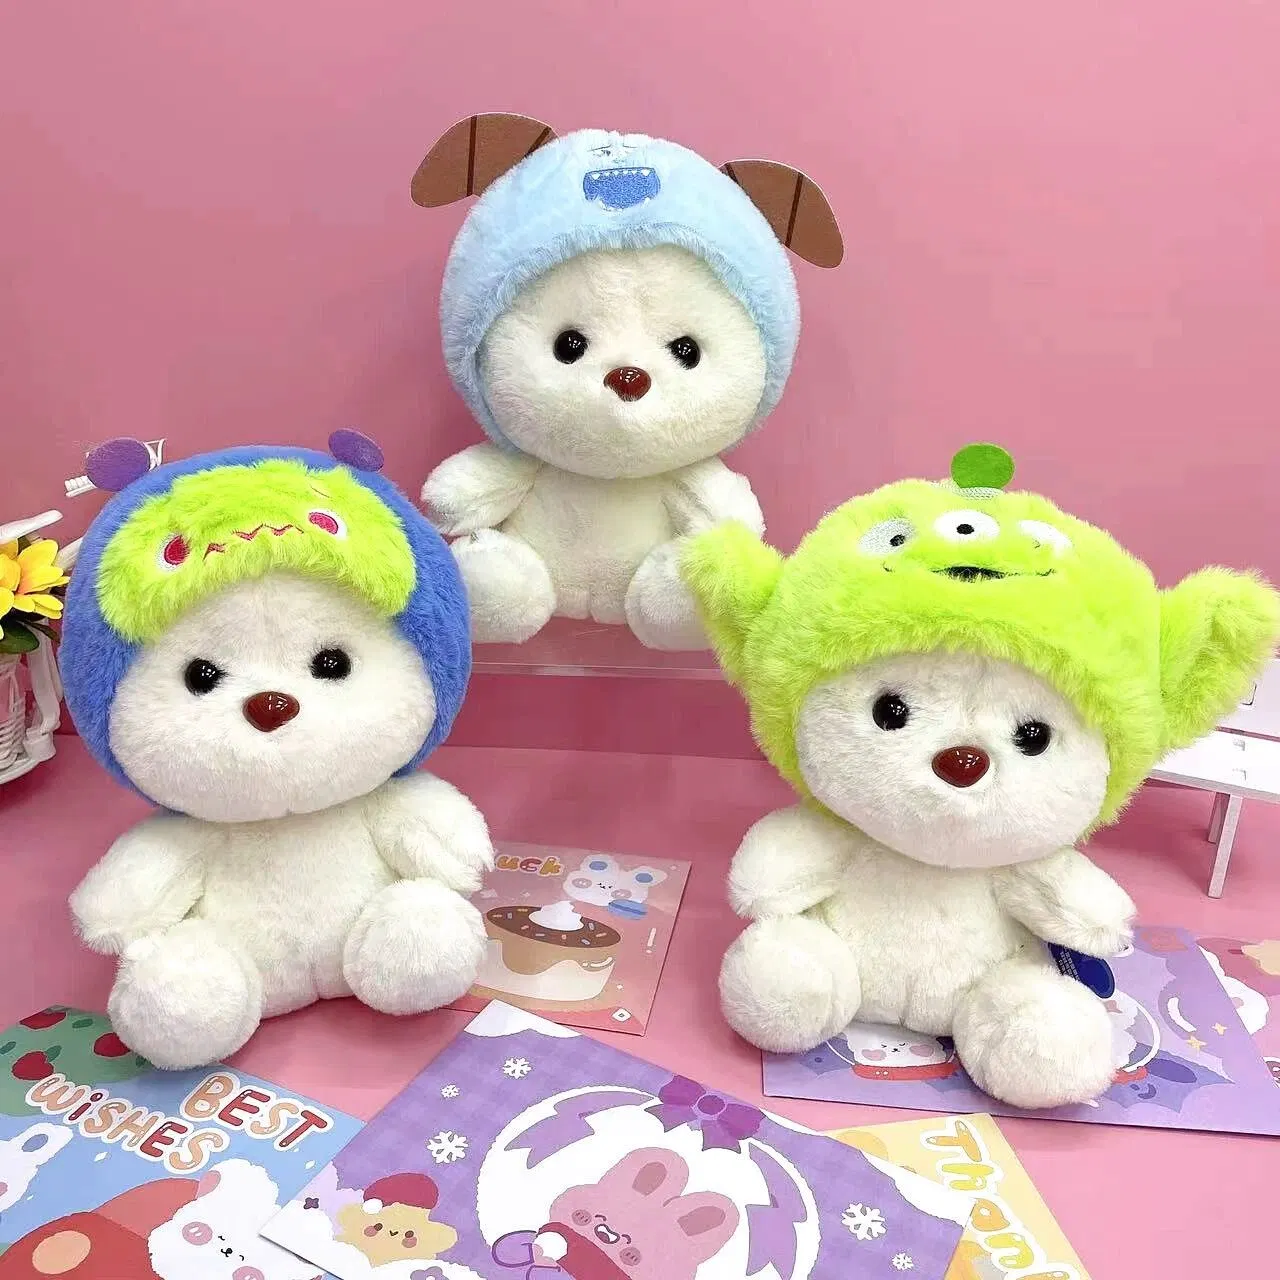 Нести Ruunjoy мягкие игрушки Cute фаршированные животных кукла День Рождения приятный игрушка для взрослых детей кукла